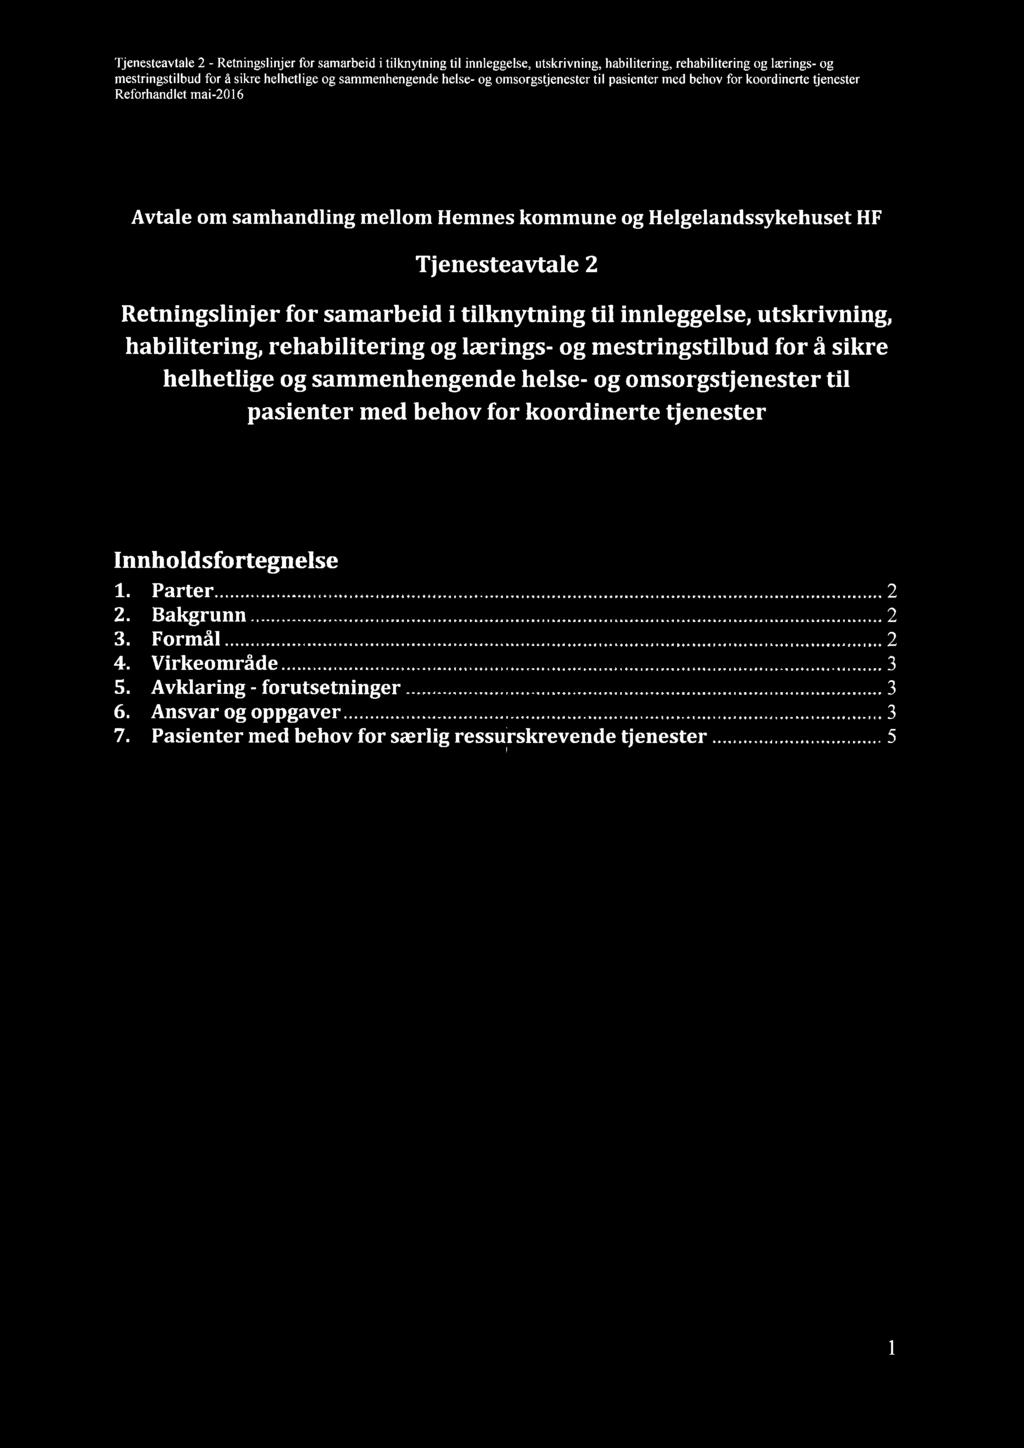 ljenesteavtale - Retningslinjer for samarbeid i tilknyning til innleggelse, utskrivning, habilitering, rehabilitering og lærings- og Avtale om samhandling mellom Hemnes kommune og Helgelandssykehuset